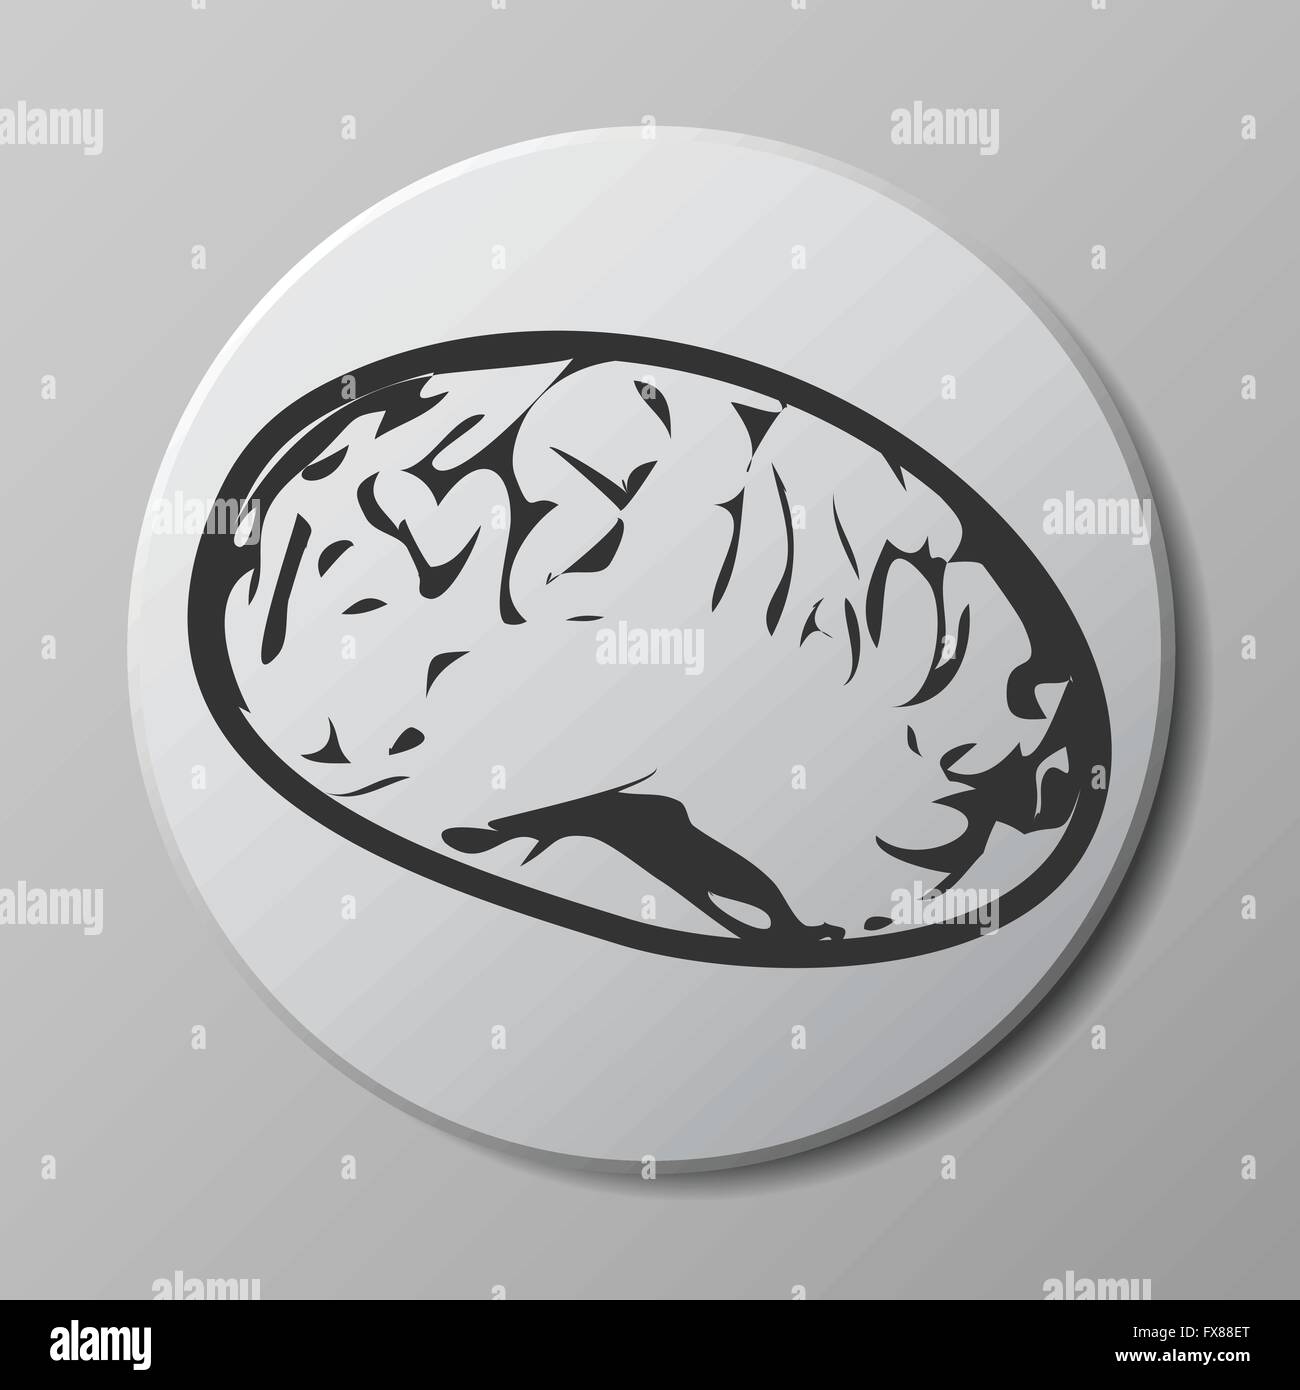 Gehirn grau Vektor Icon auf runden Knopf mit Schatten Stock Vektor